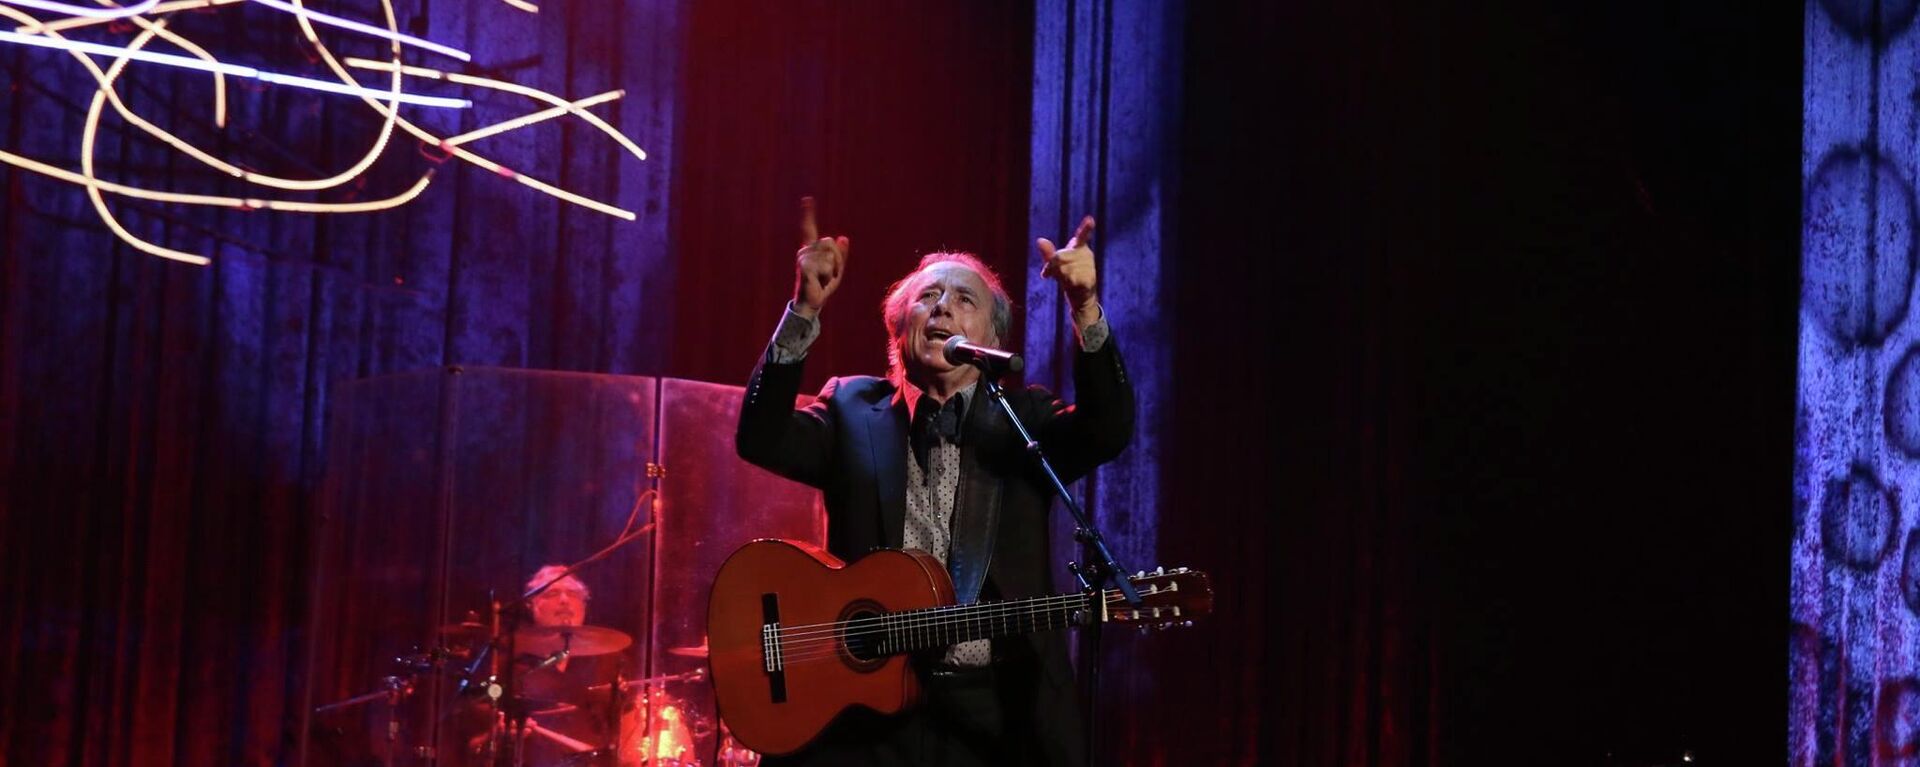 El cantautor español Joan Manuel Serrat durante su gira Antología desordenada, en 2015 - Sputnik Mundo, 1920, 29.06.2022